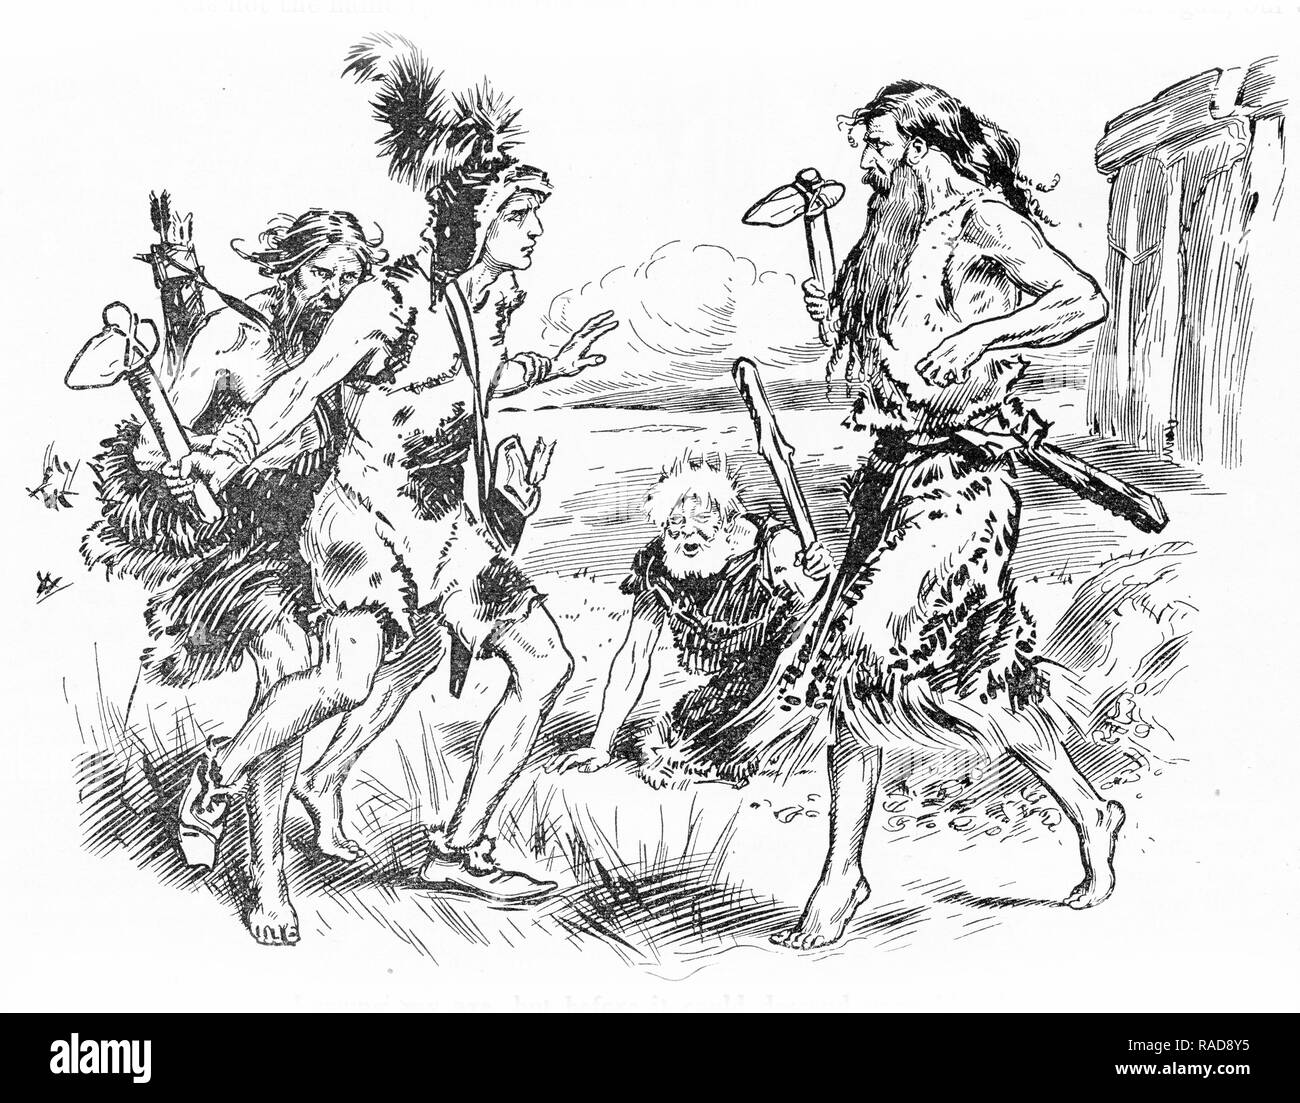 Grabado de un enfrentamiento entre los hombres de la edad de piedra. A partir de un original grabado en los muchachos anual 1925. Foto de stock